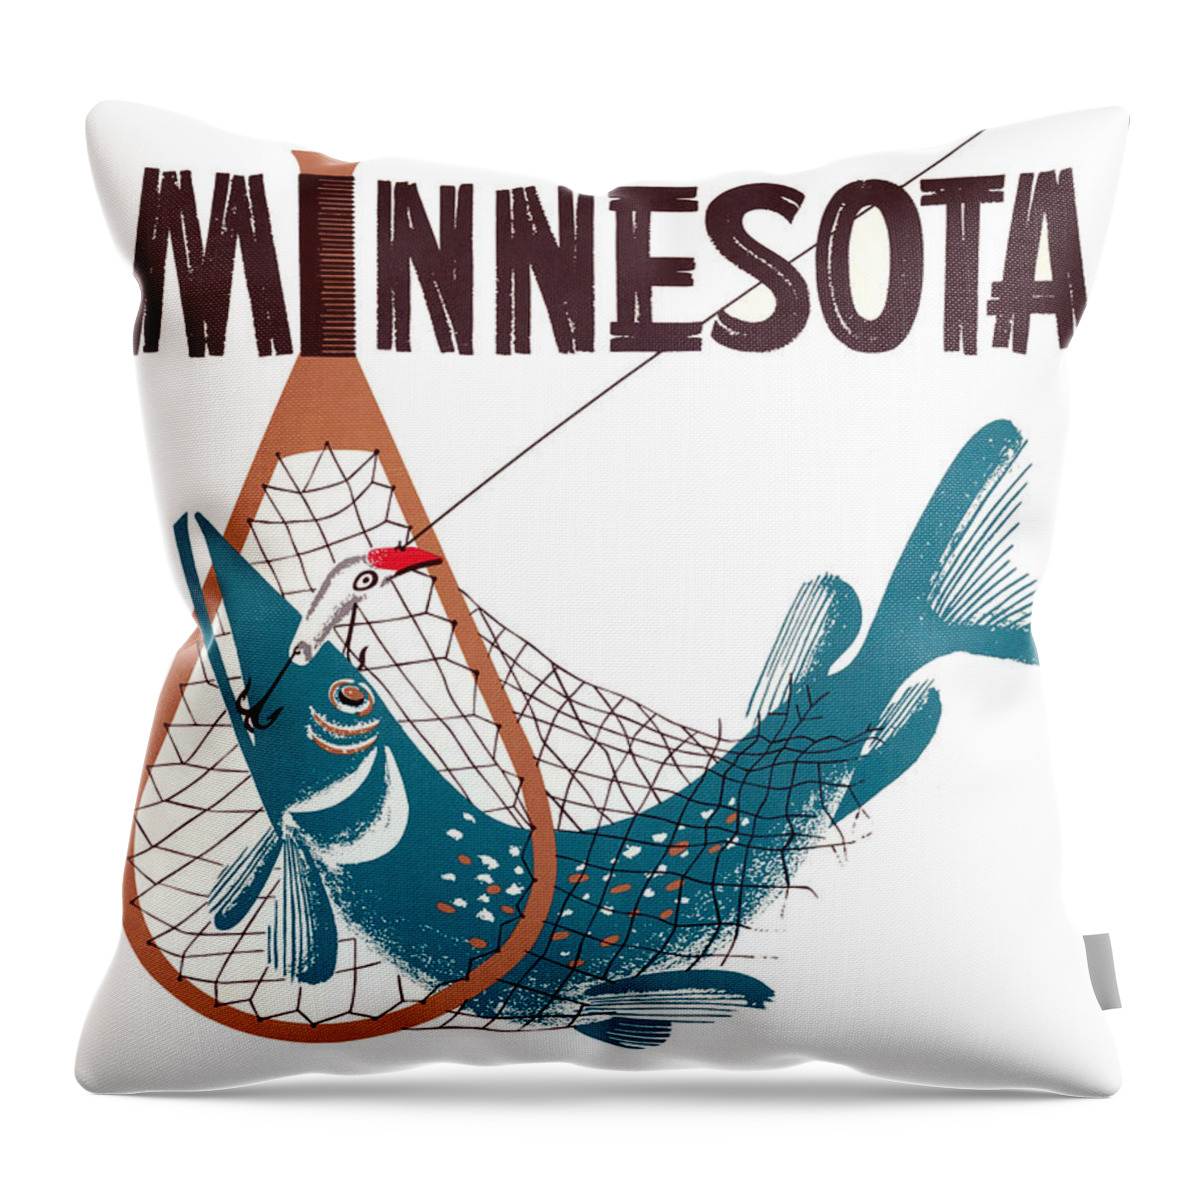 Minnesota Throw Pillow featuring the digital art Minnesota Hook by Long Shot